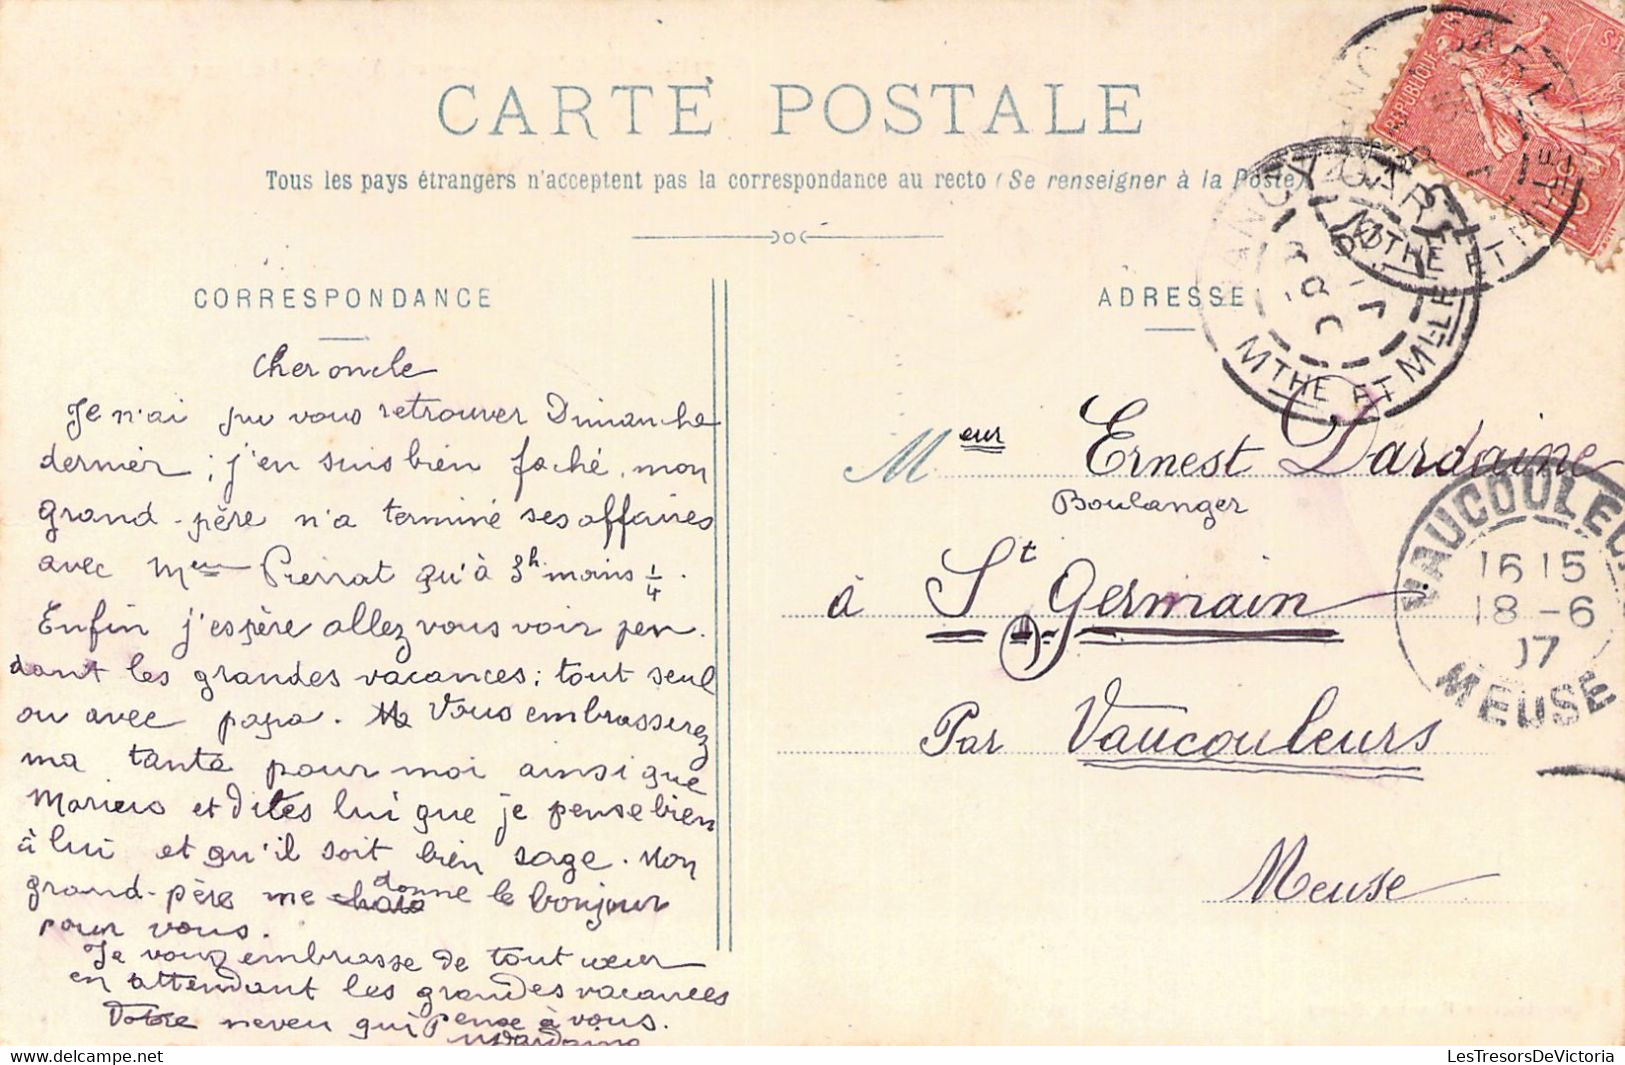 FRANCE - 54 - BOUXIERES AUX DAMES - Le Pont - Baigneurs - Carte Postale Ancienne - Andere & Zonder Classificatie